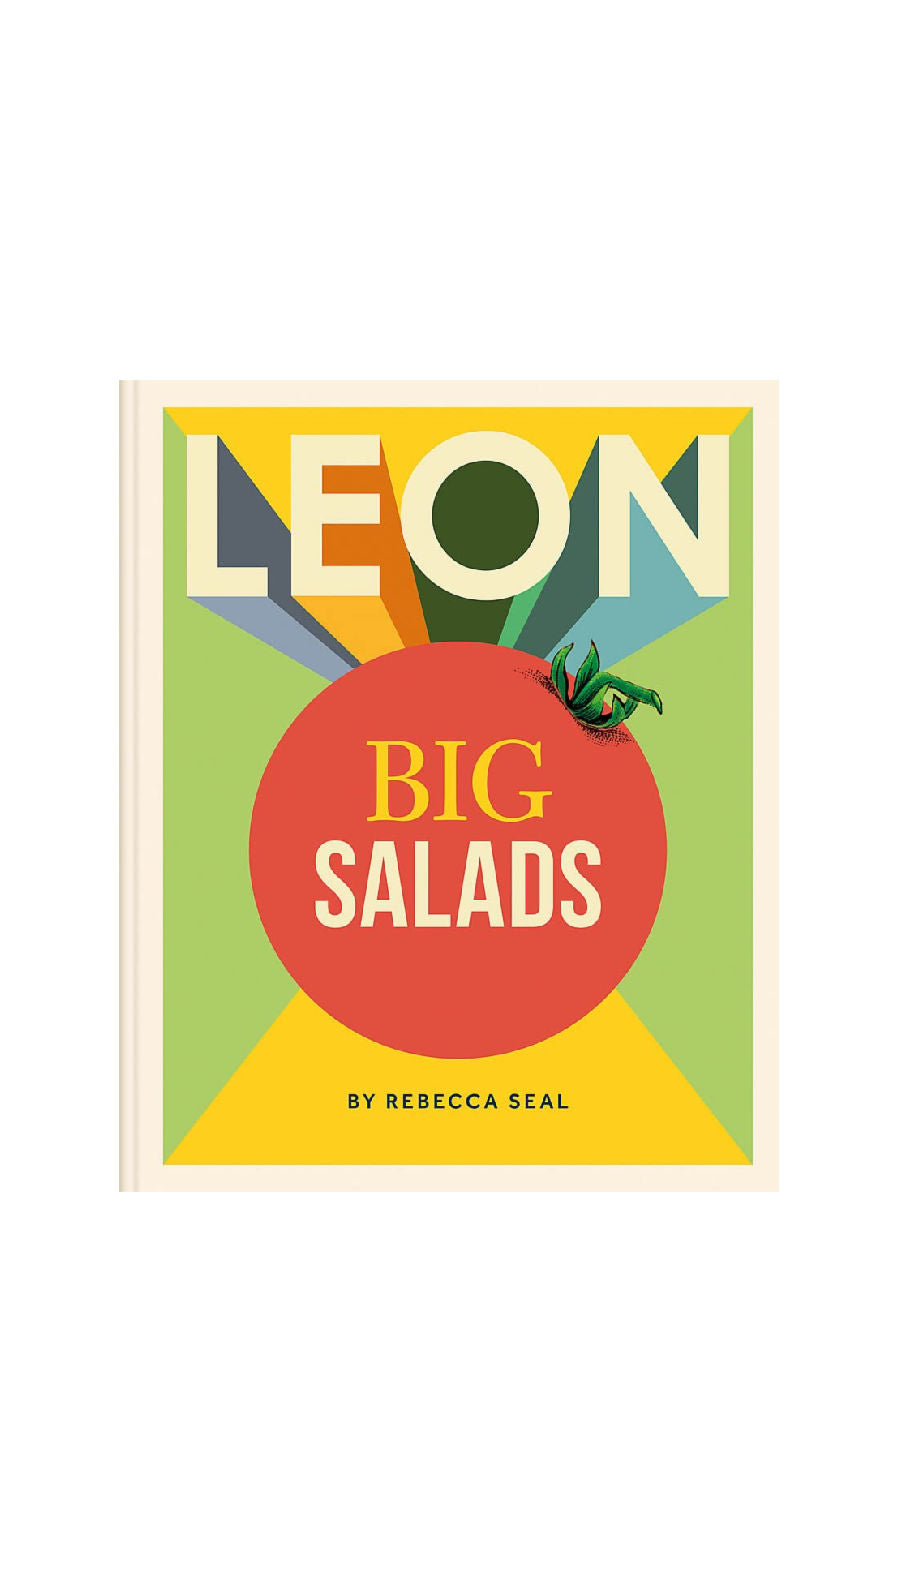 Leon Big Salads / REBECCA SEAL